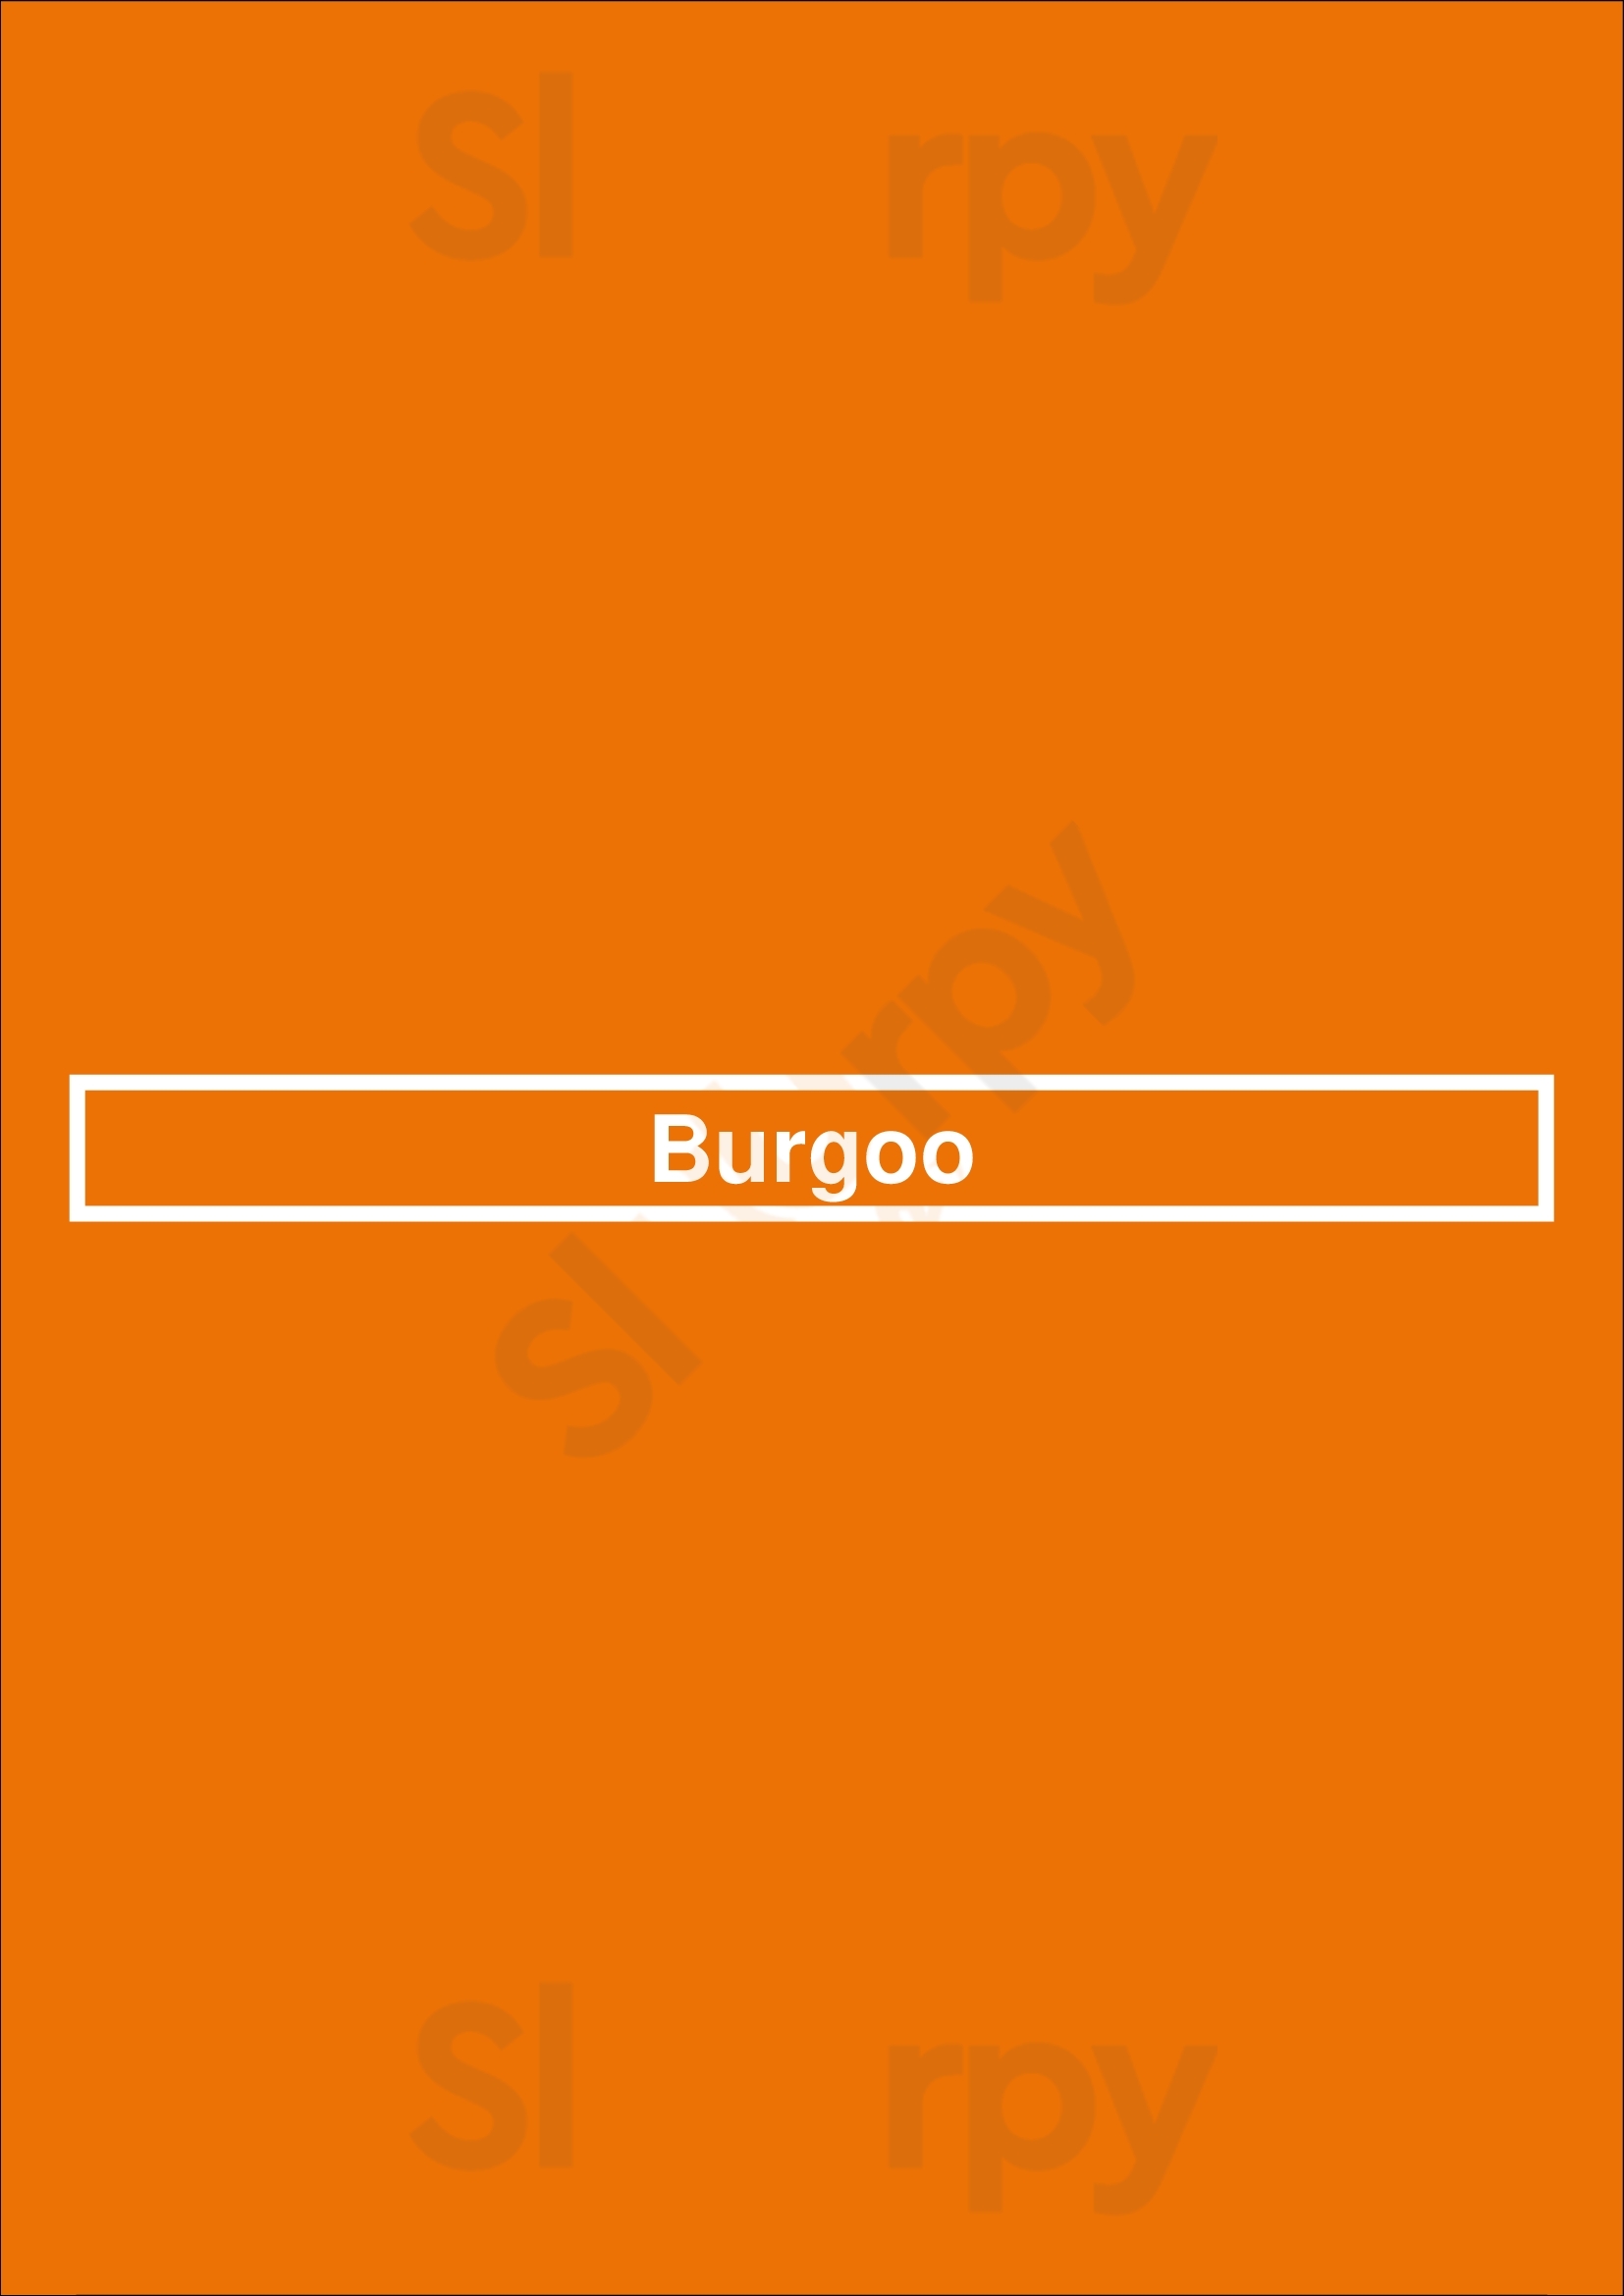 Burgoo North Vancouver Menu - 1